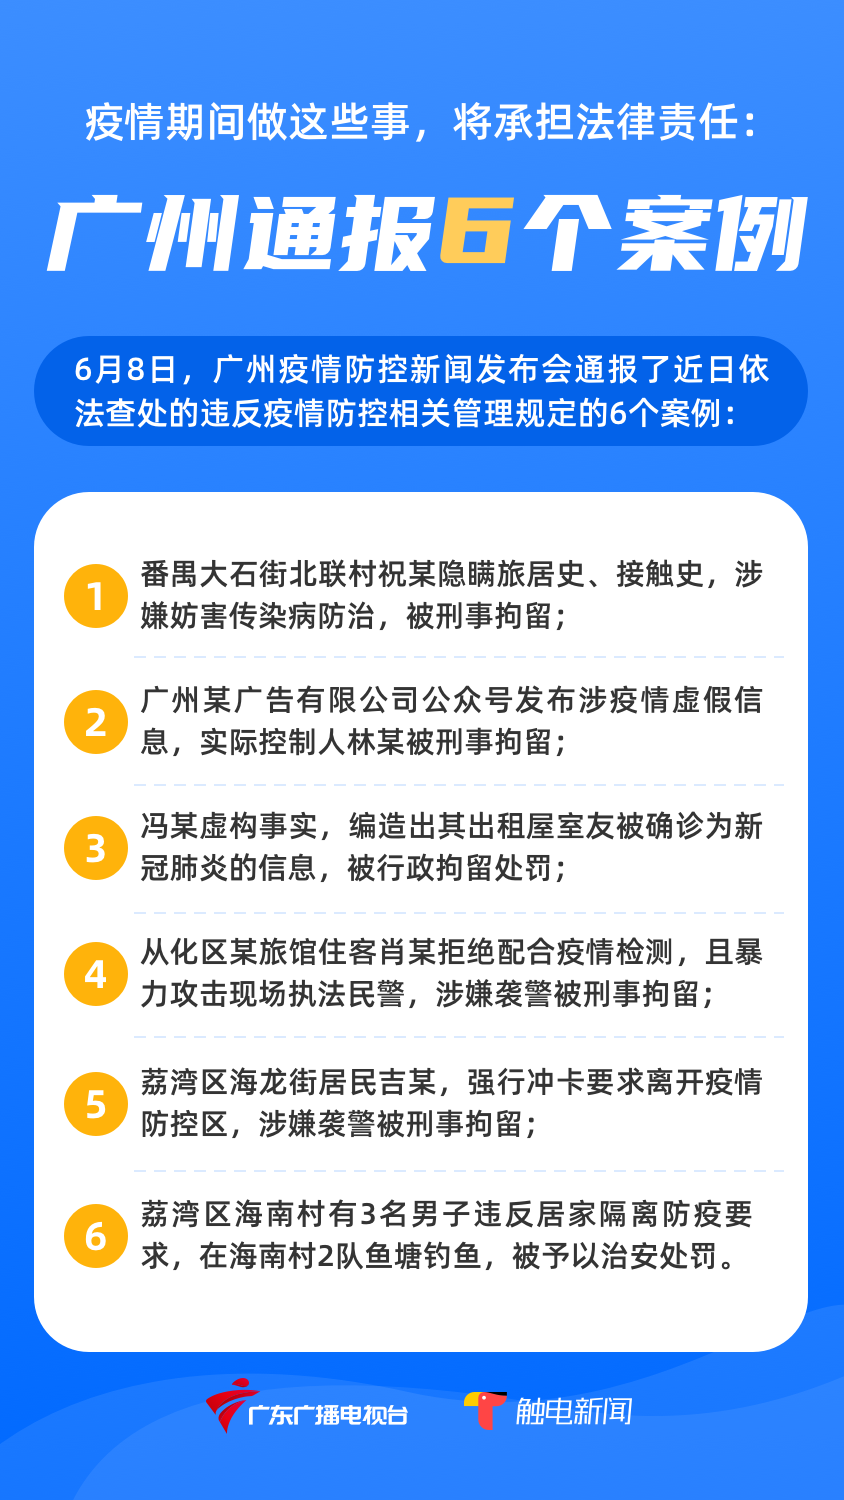 隐瞒旅居史、不配合疫情检测……这6个案例被广州警方通报查处！